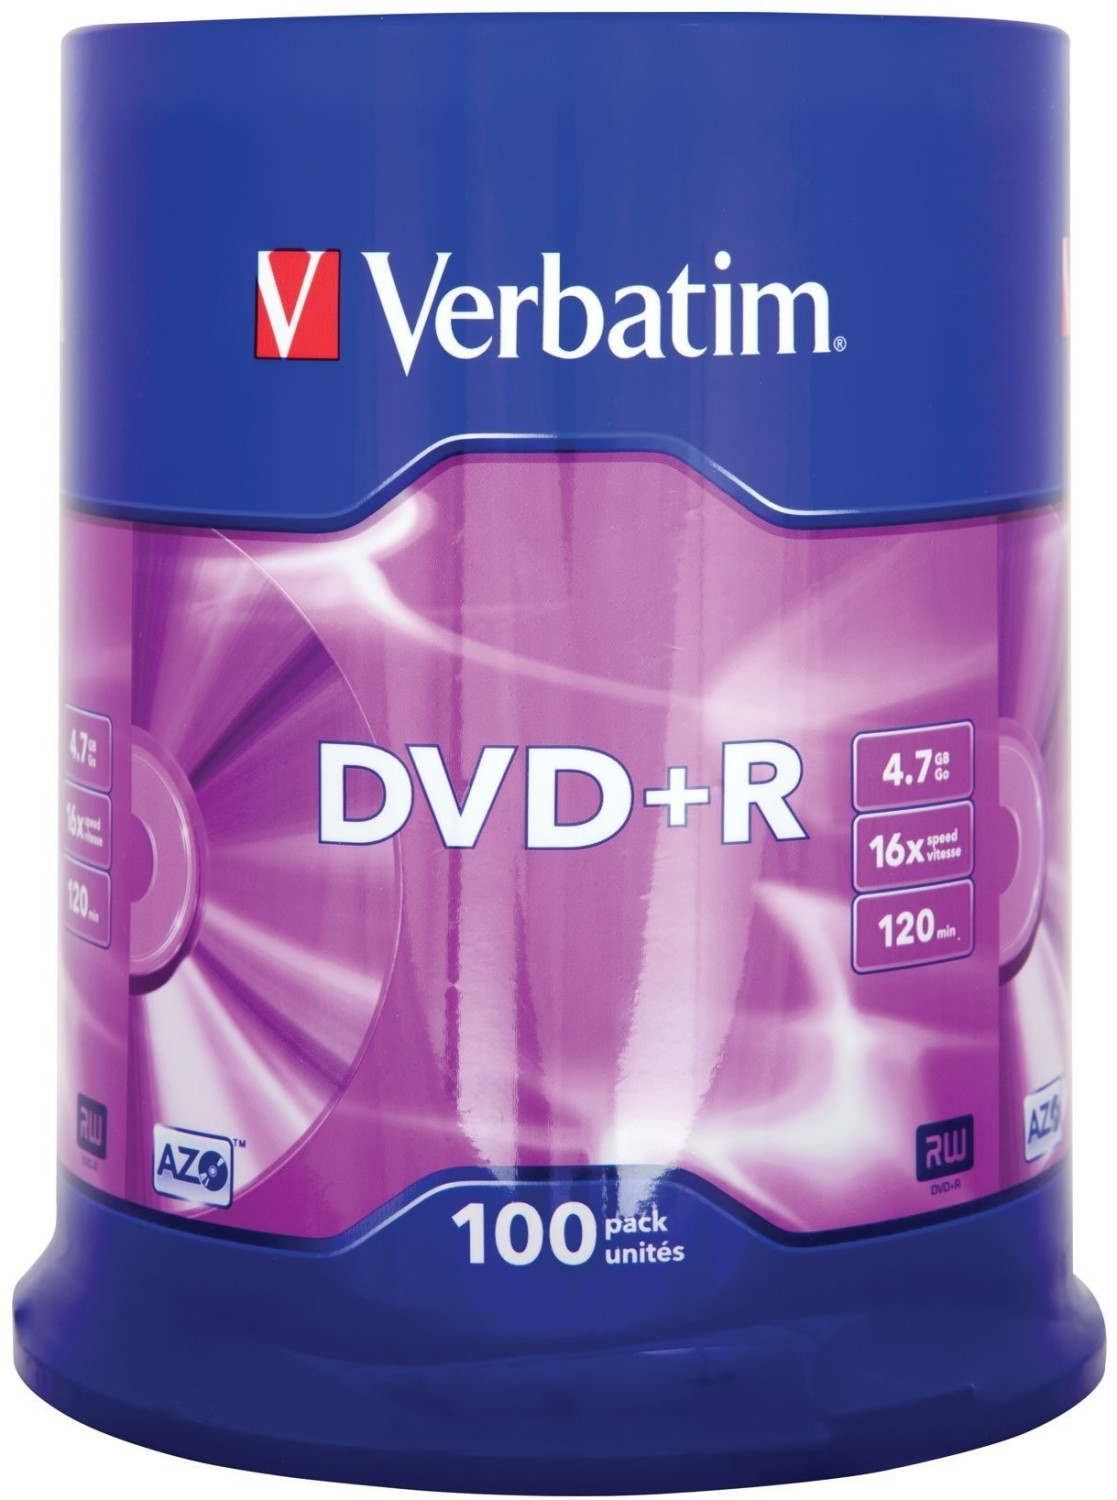 Verbatim DVD+R 4,7GB 120min 16x Matt Silver 100pk Spindle